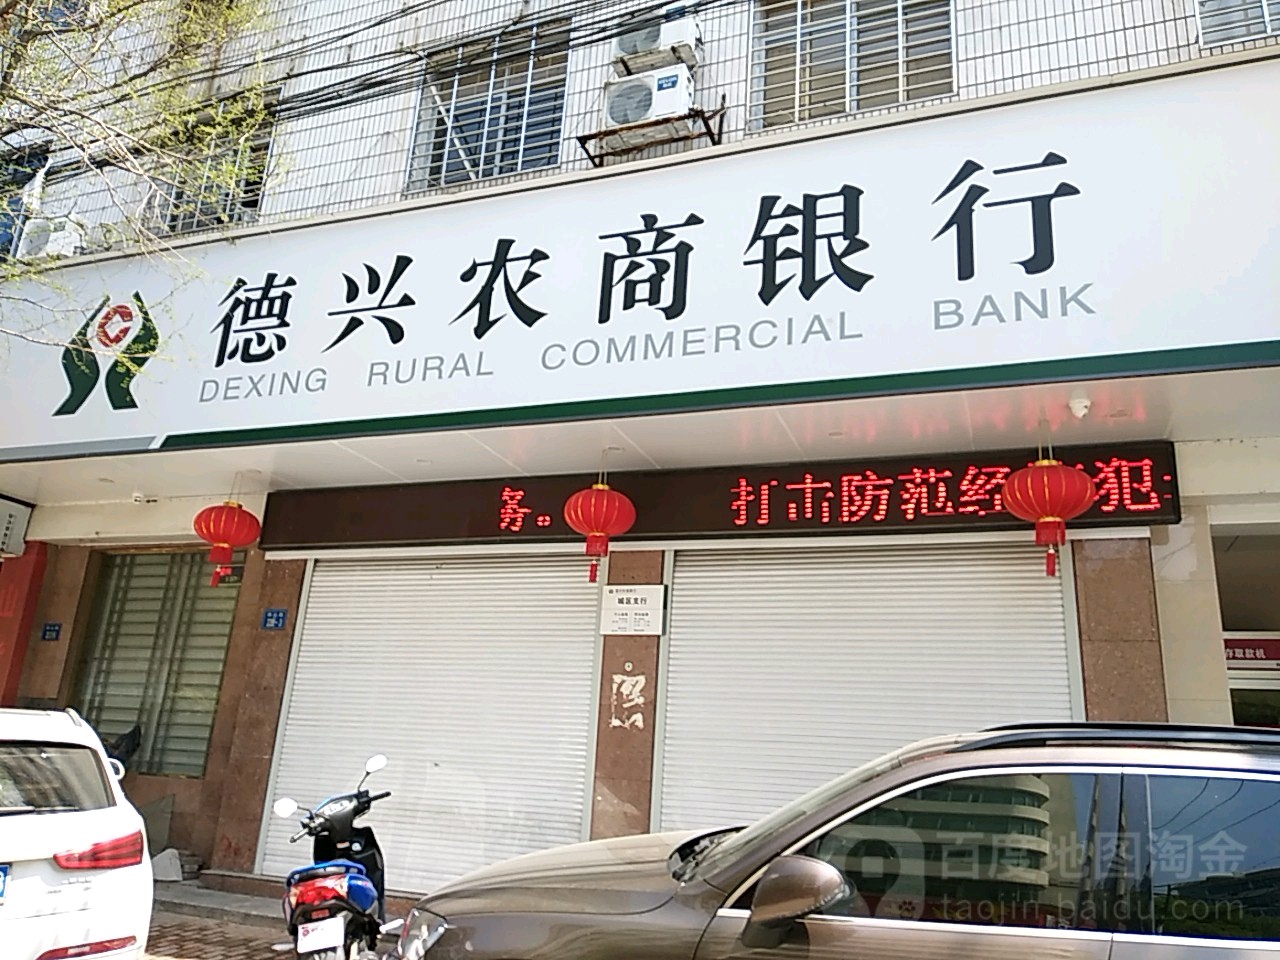 德興市農村商業銀行